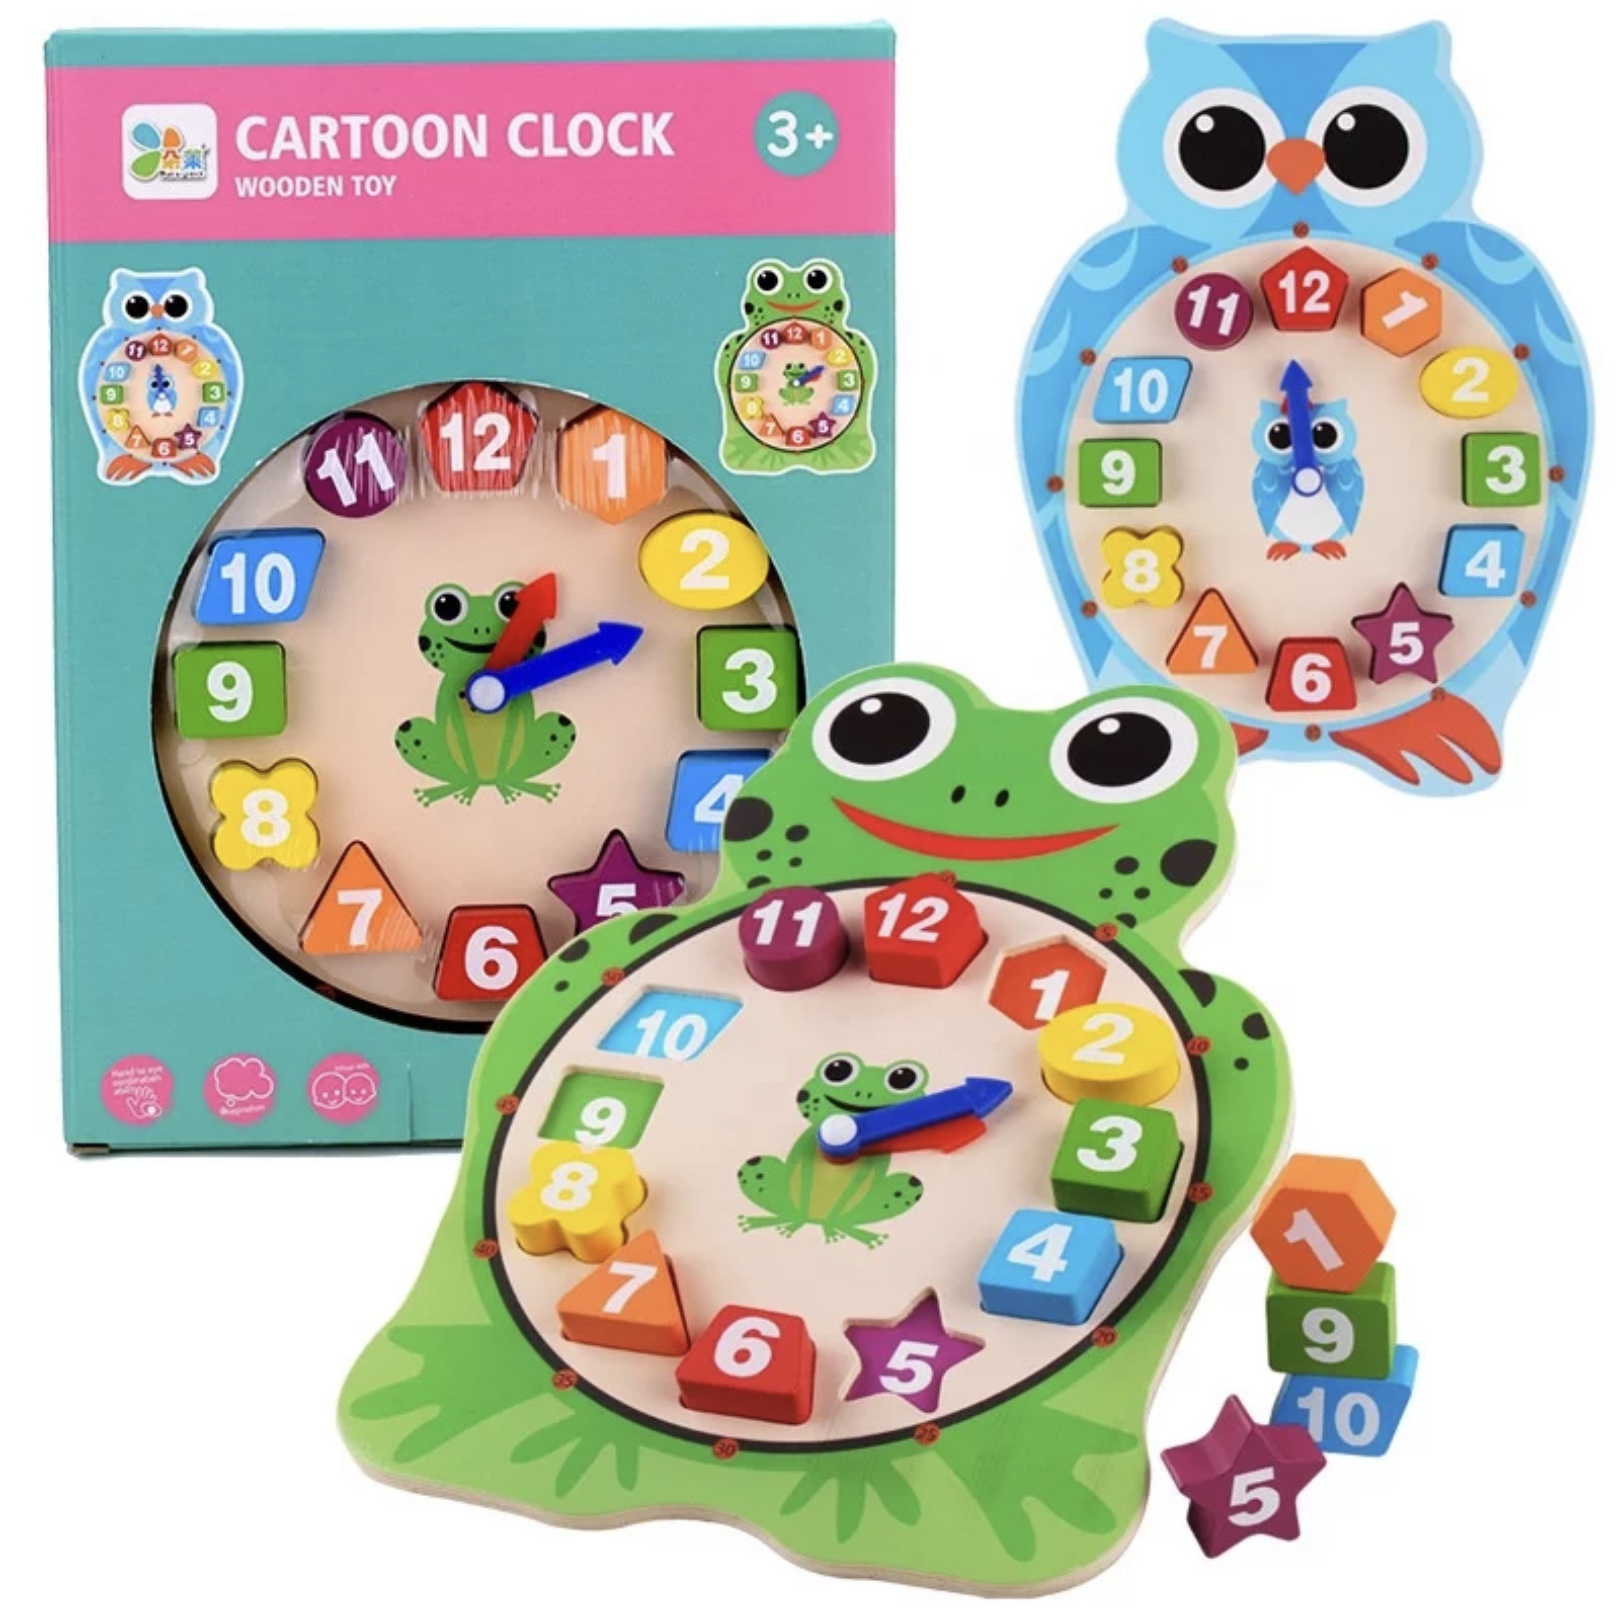 Ceasul din lemn de tip bufniță are diferite forme în funcție de preferințe este atât de colorat și vesel încât cei mici vor învăța cu plăcere cat indică ceasul